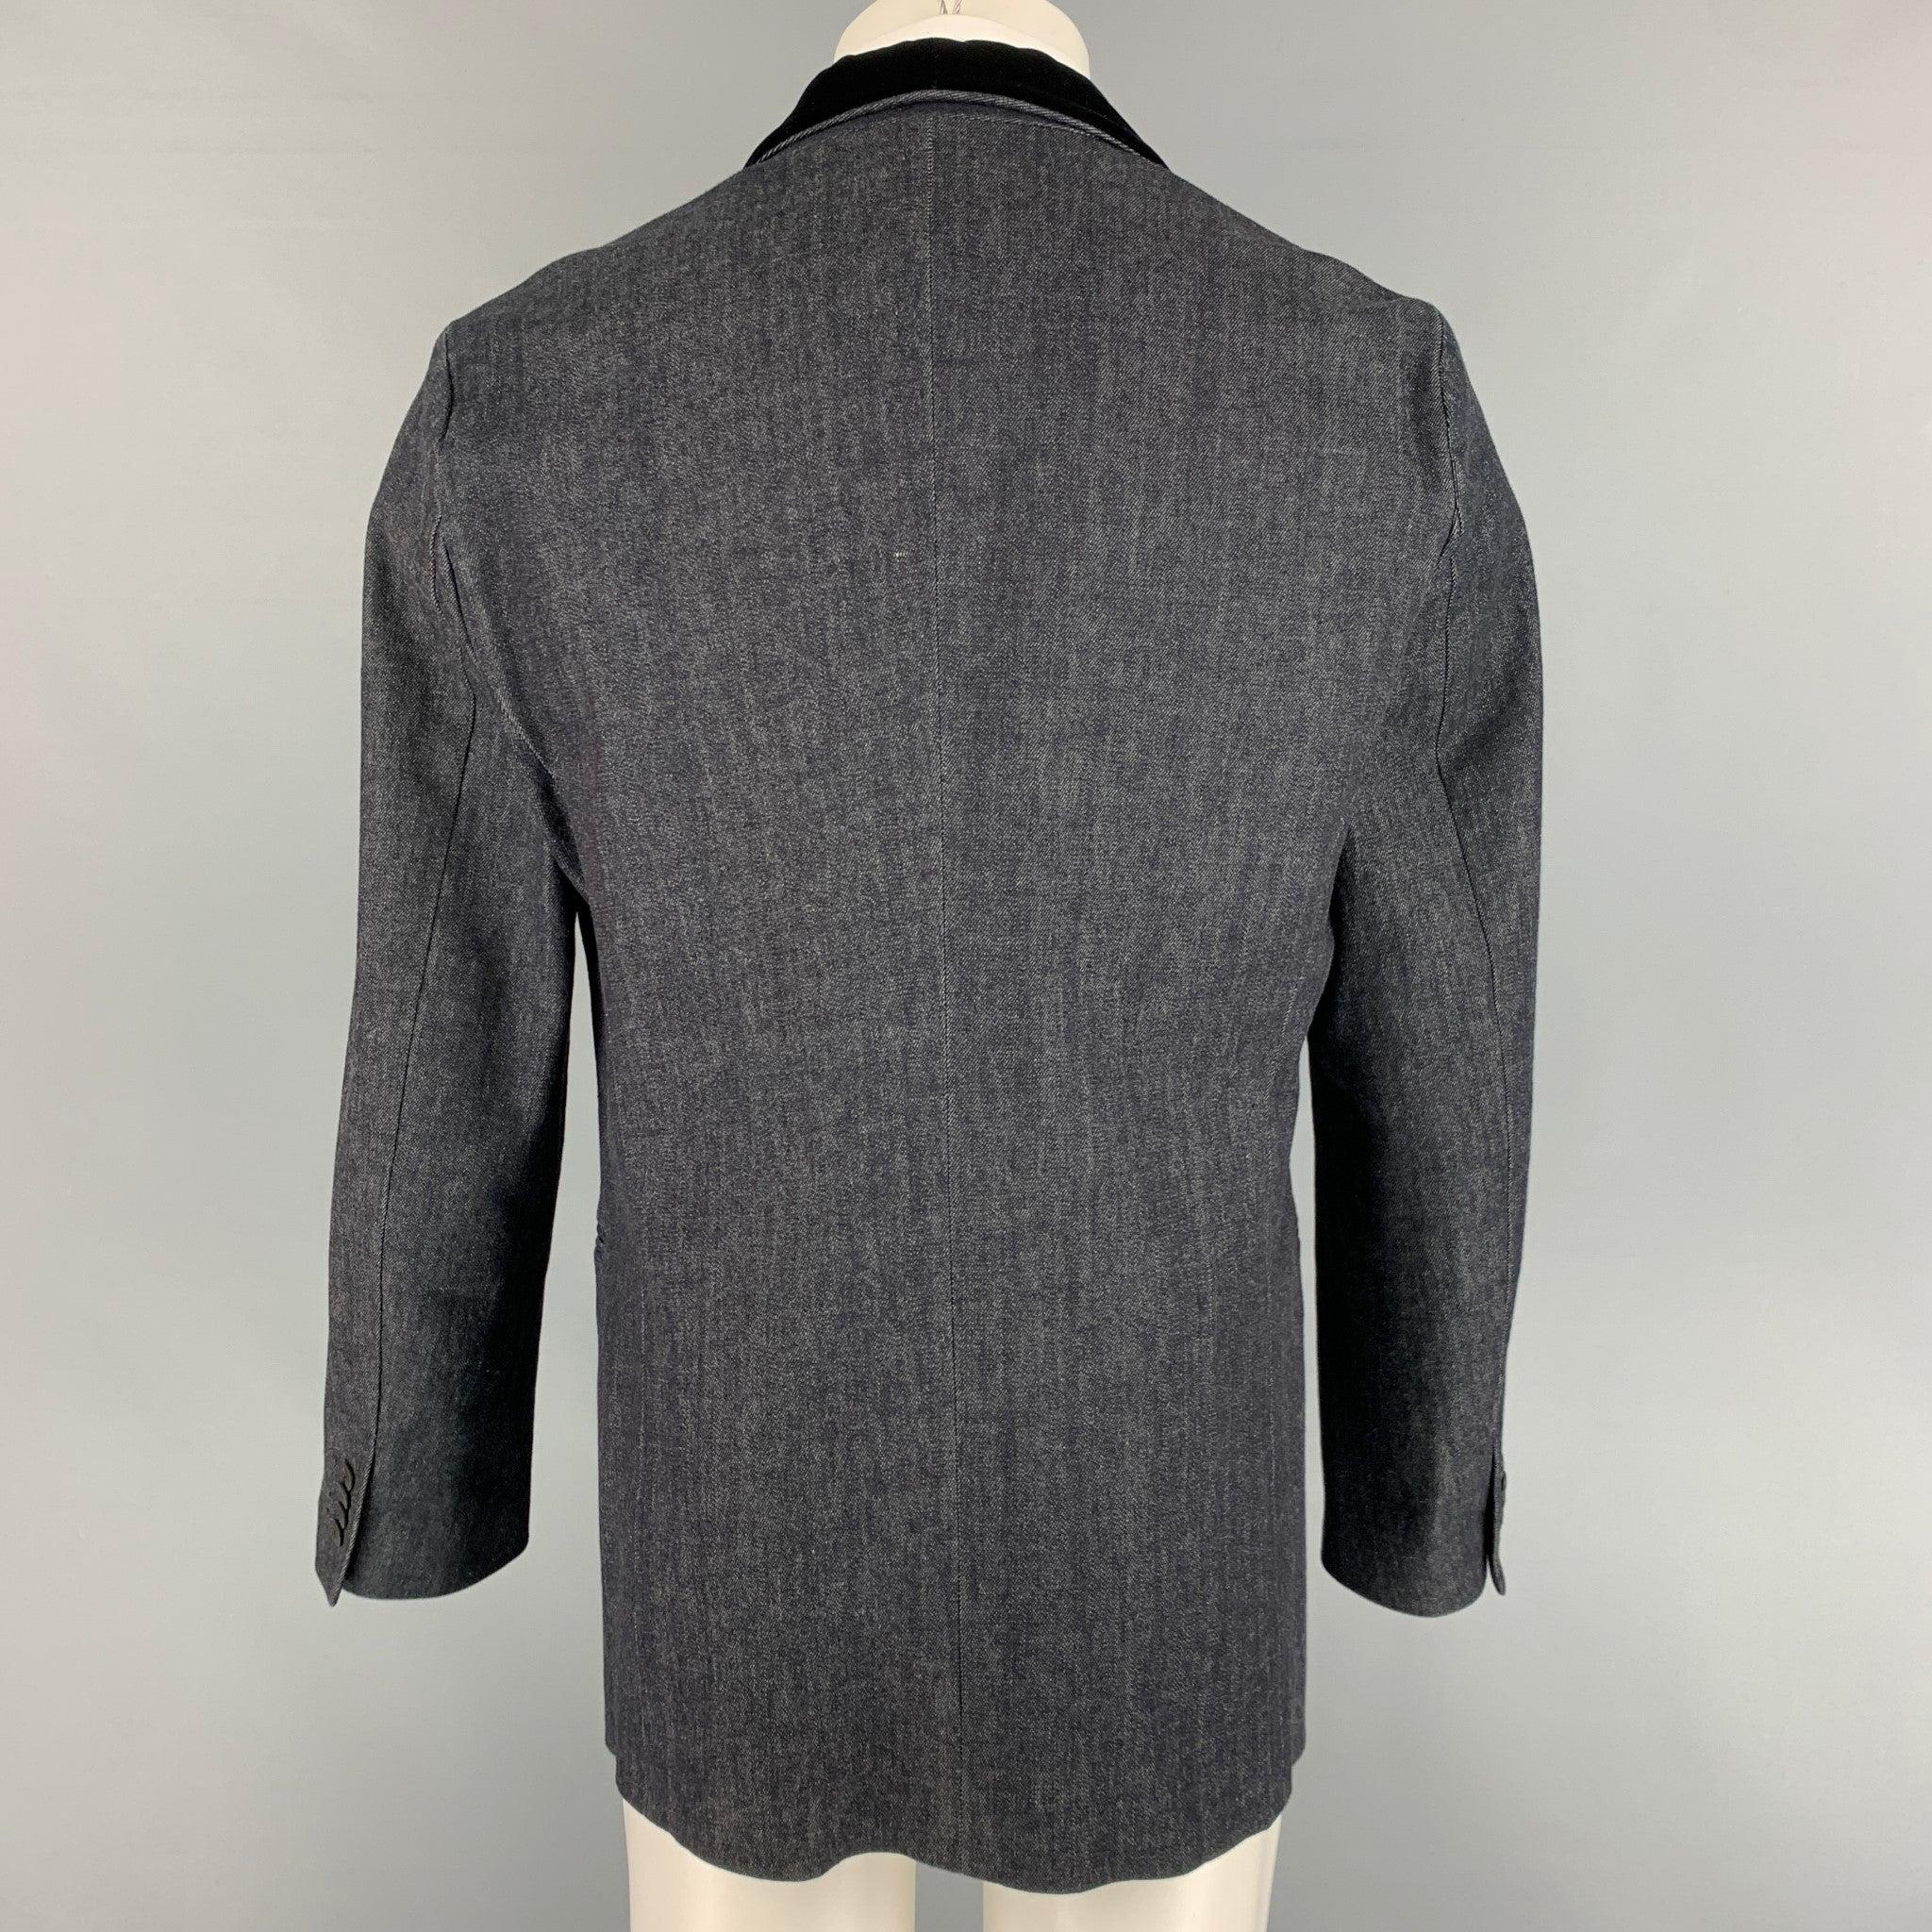 GIORGIO ARMANI Size 44 Indigo Mixed Materials Cotton Cashmere Sport Coat In Good Condition For Sale In San Francisco, CA